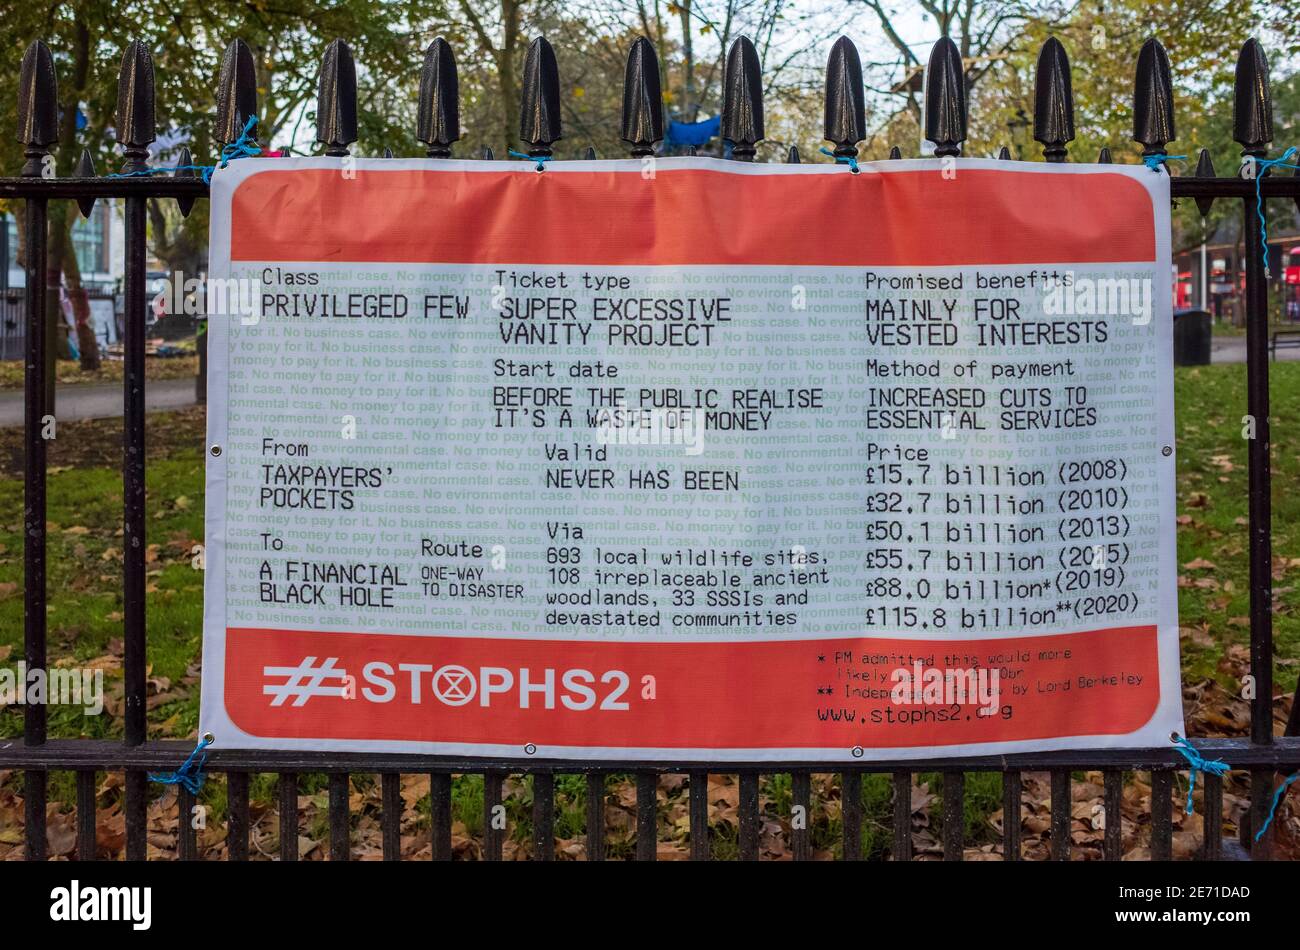 Cartel de protesta de parada HS2 - cartel de billete de tren fuera de la estación de tren de Euston, Londres. Foto de stock